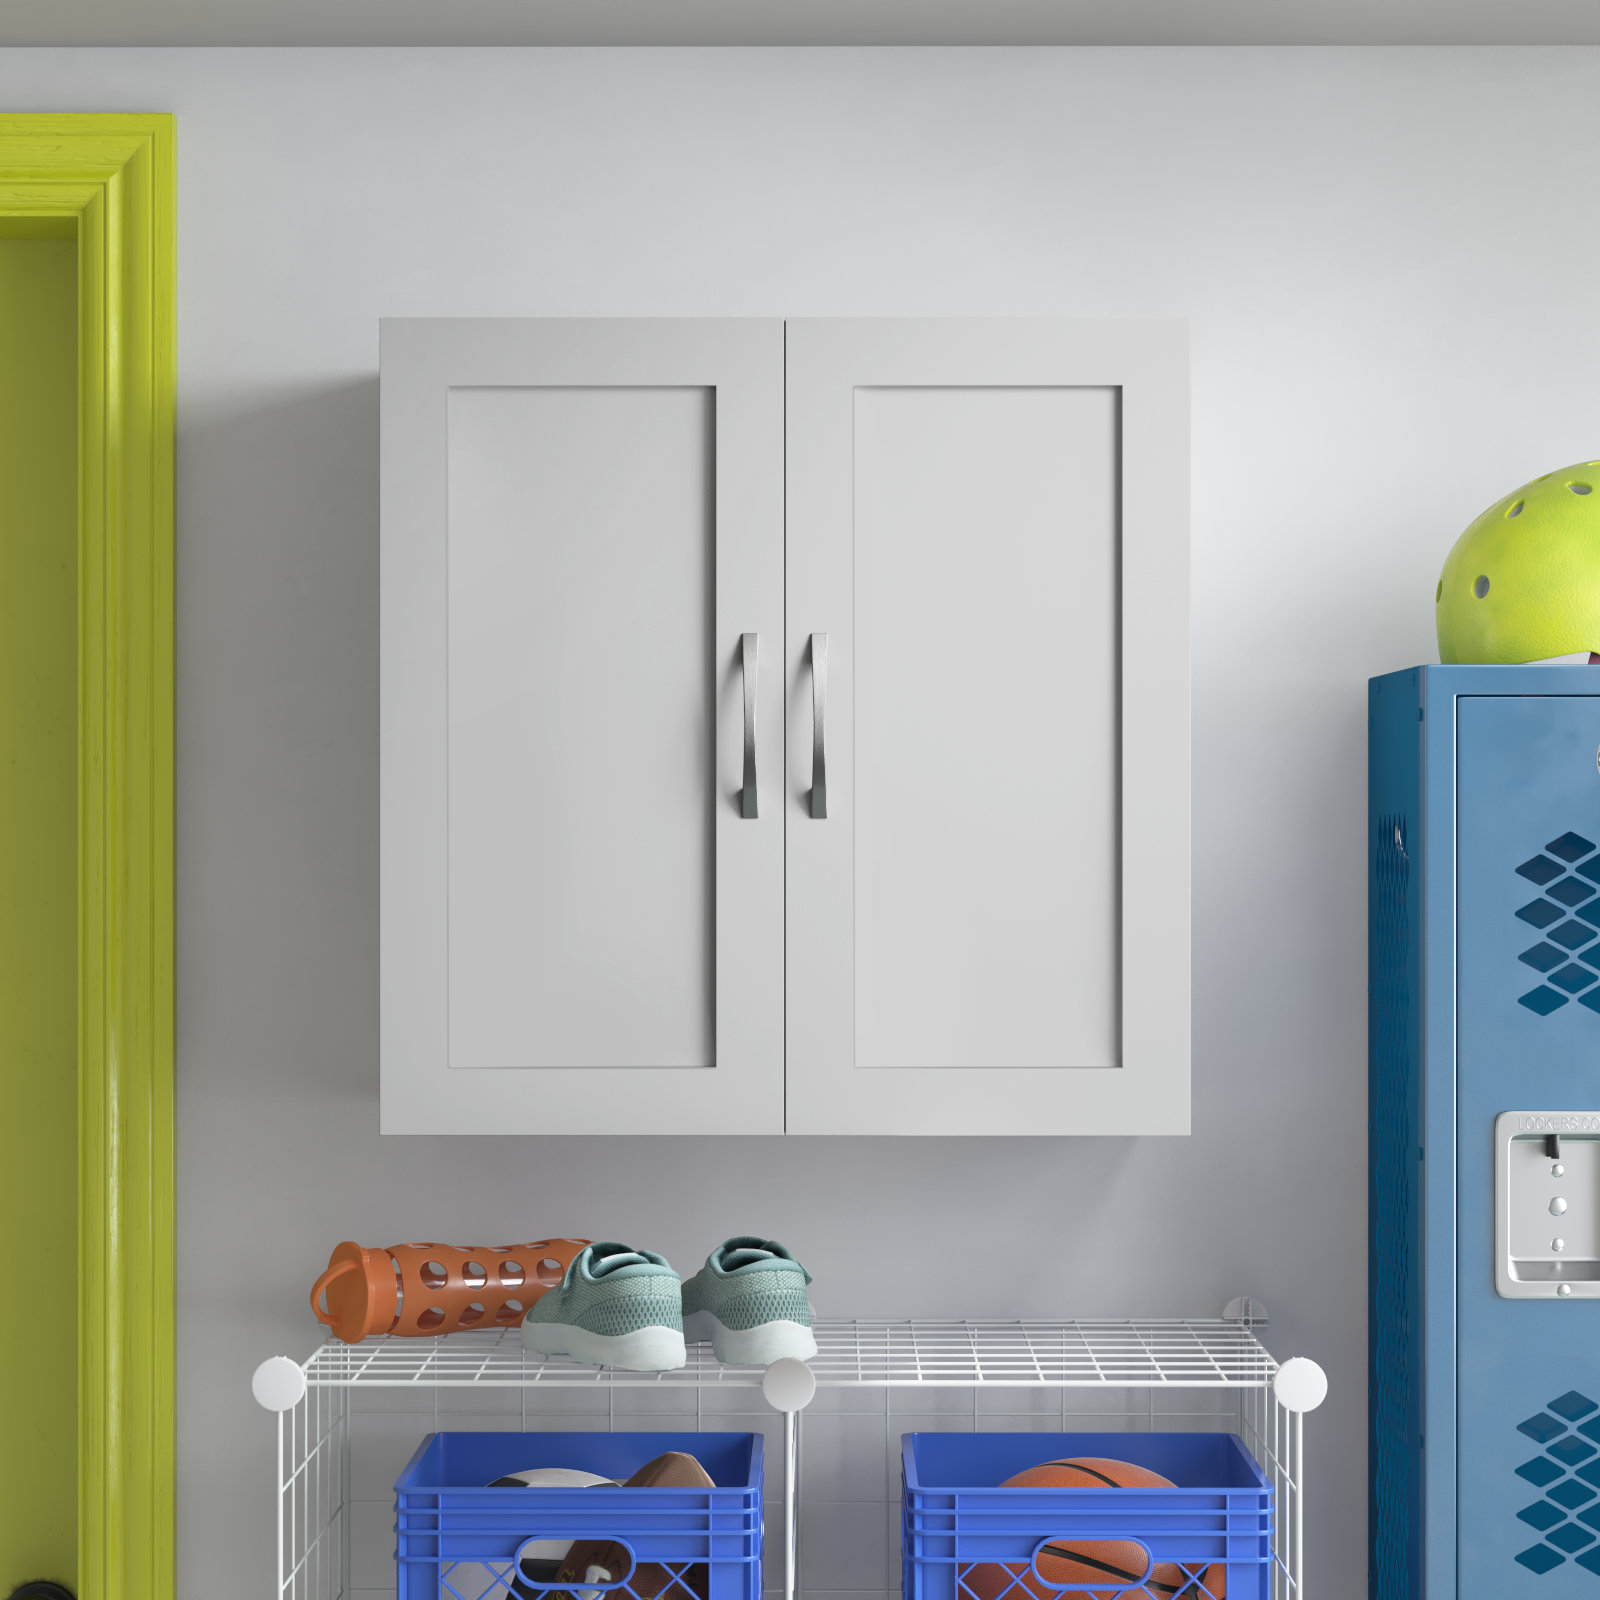 https://assets.wfcdn.com/im/56437970/compr-r85/2553/255332541/wayfair-basics-24-h-x-23-w-x-12-d-framed-wall-cabinet.jpg